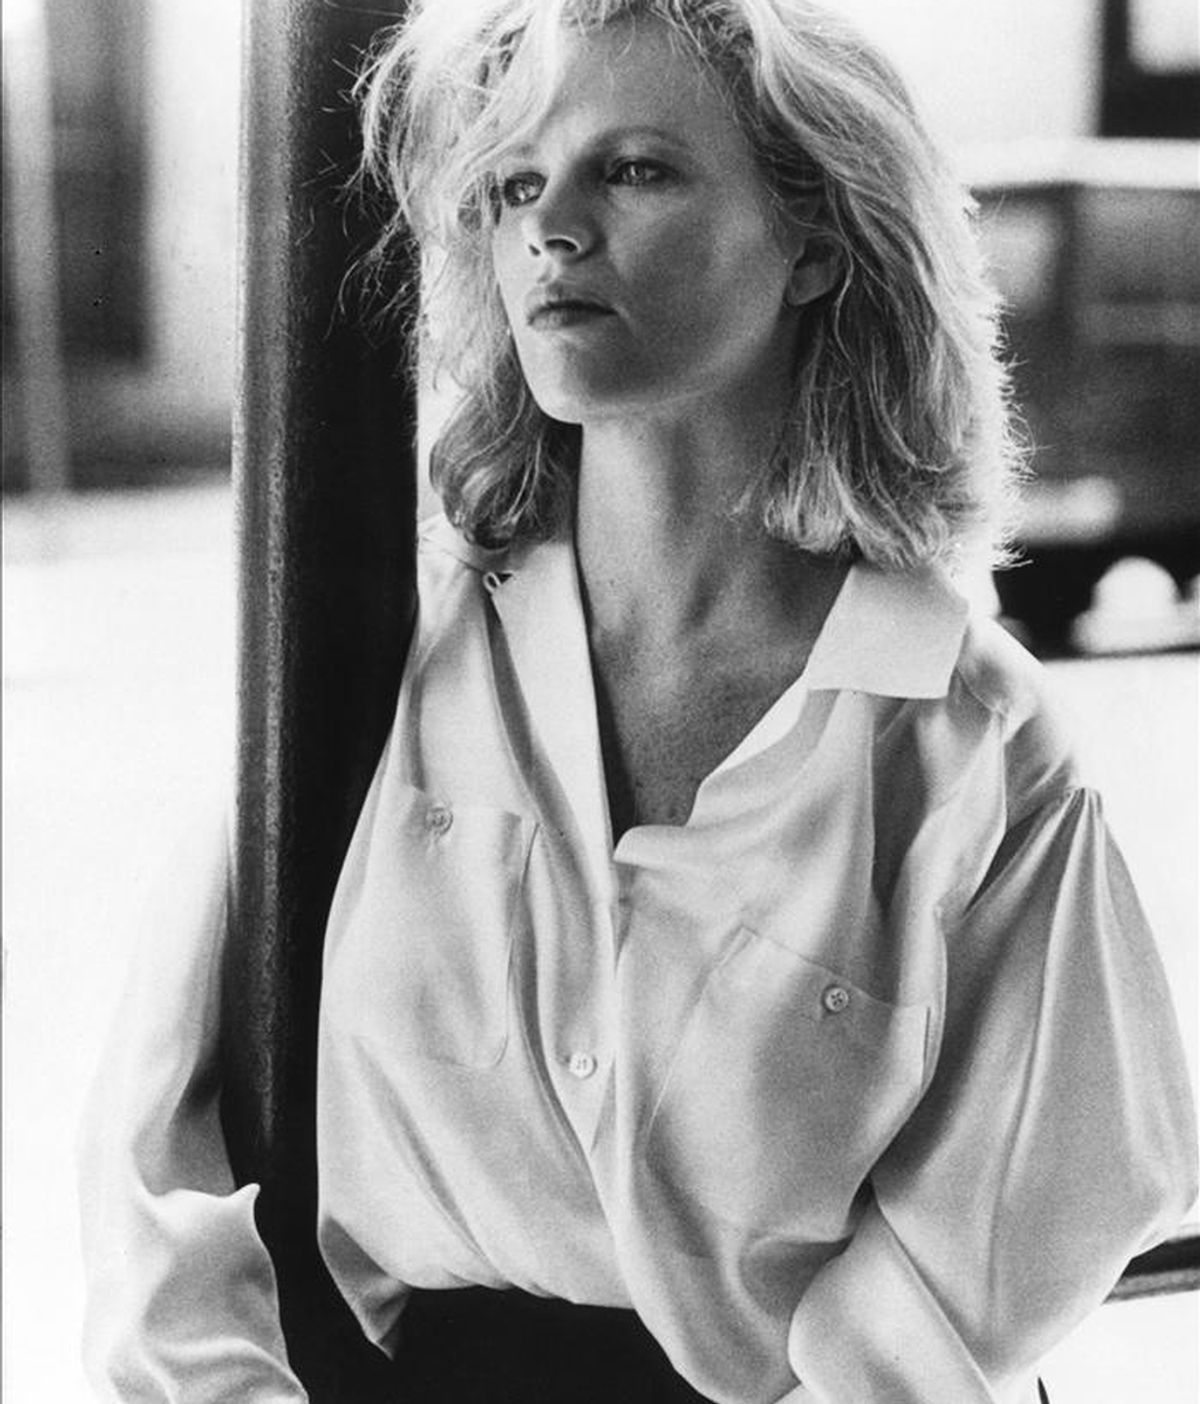 La actriz Kim Basinger durante el rodaje de la película "Nueve semanas y media", dirigida por el cineasta Adrian Lyne, en 1986. EFE/Archivo